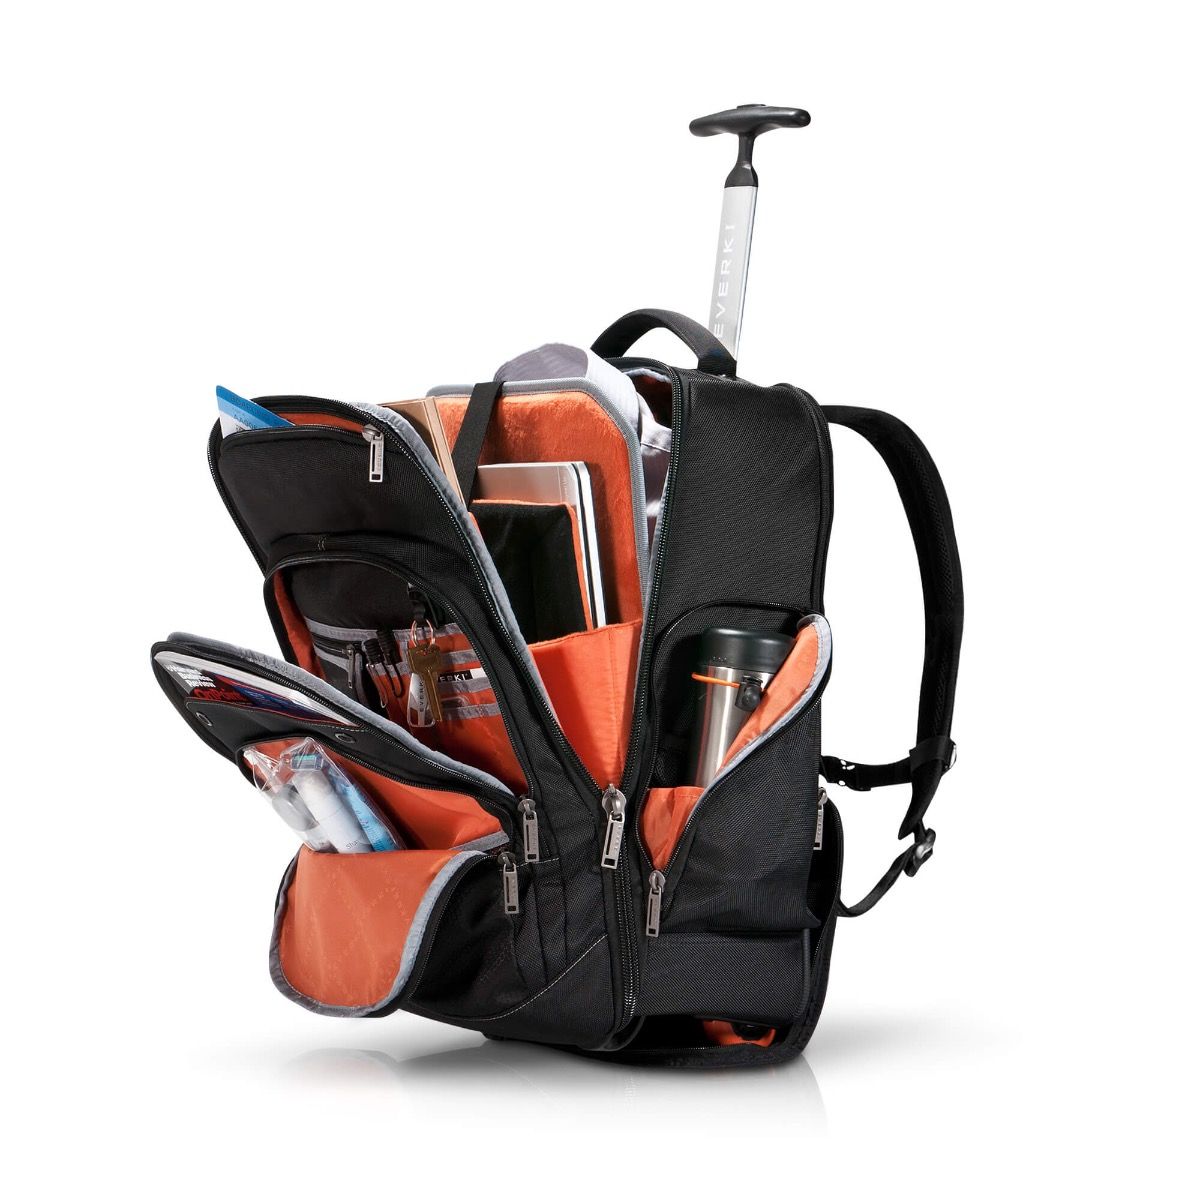 everki atlas backpack